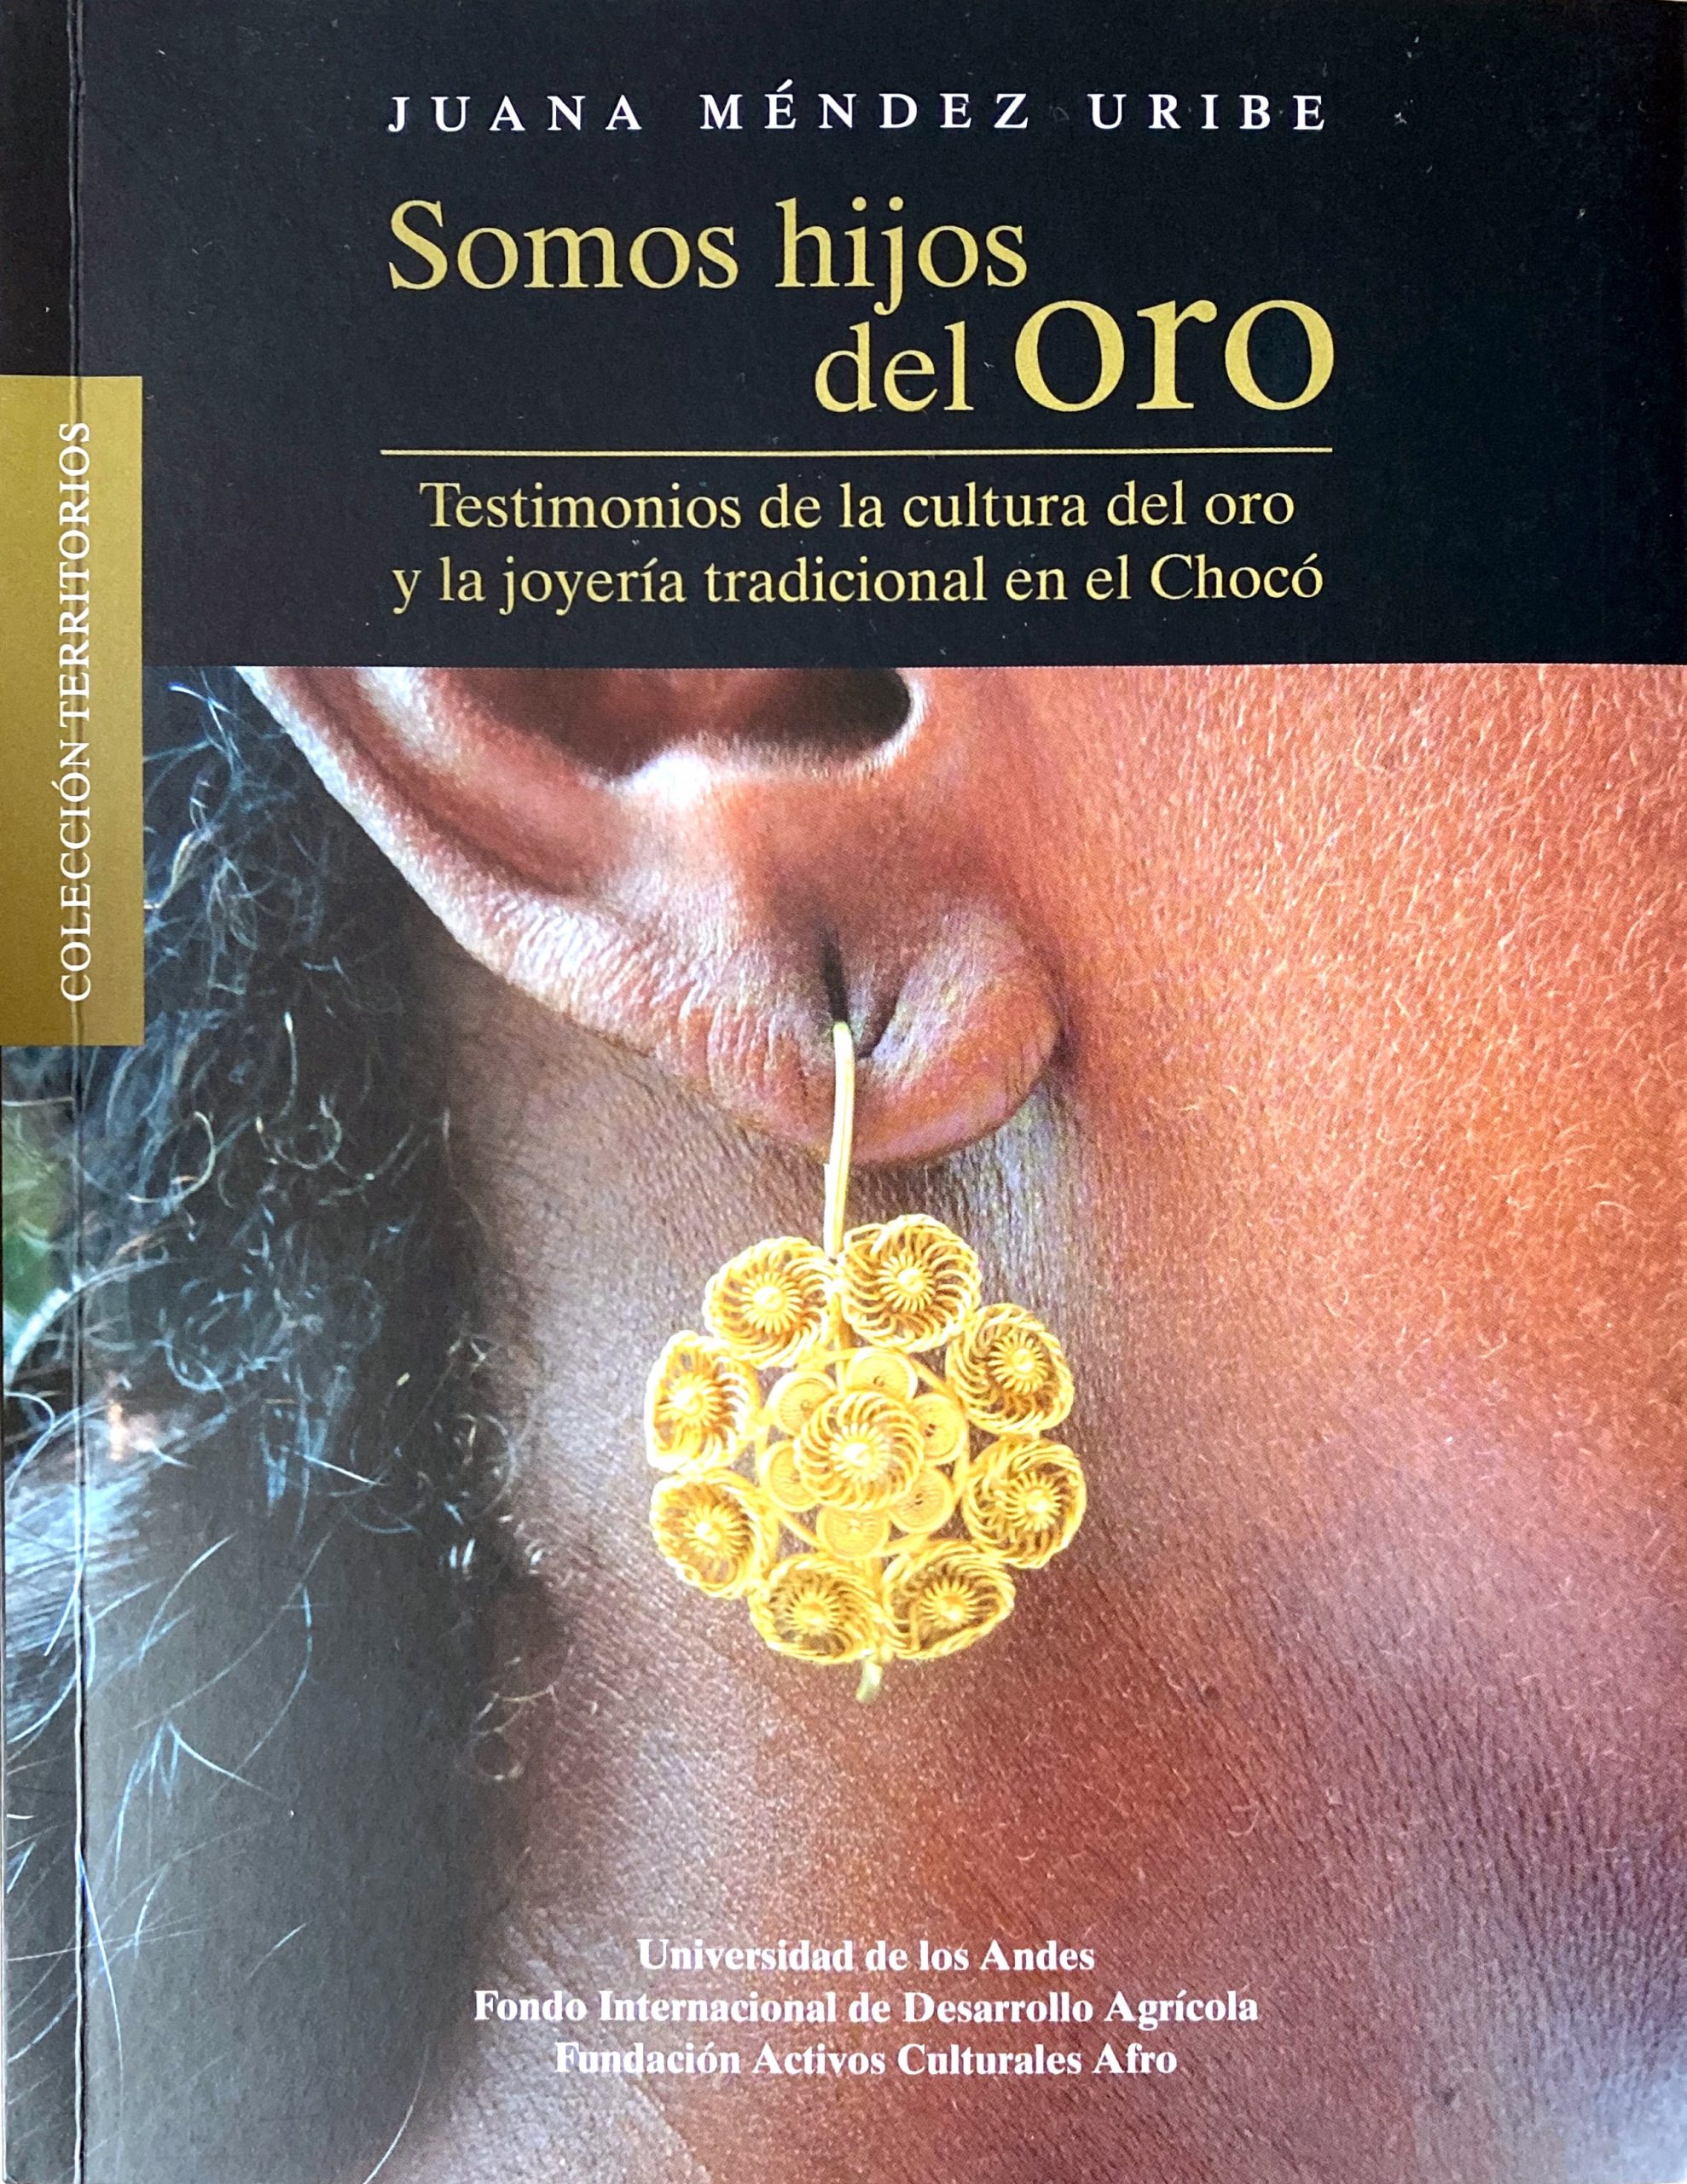 Somos hijos del oro. Testimonios de la cultura del oro y la joyería tradicional en el Chocó